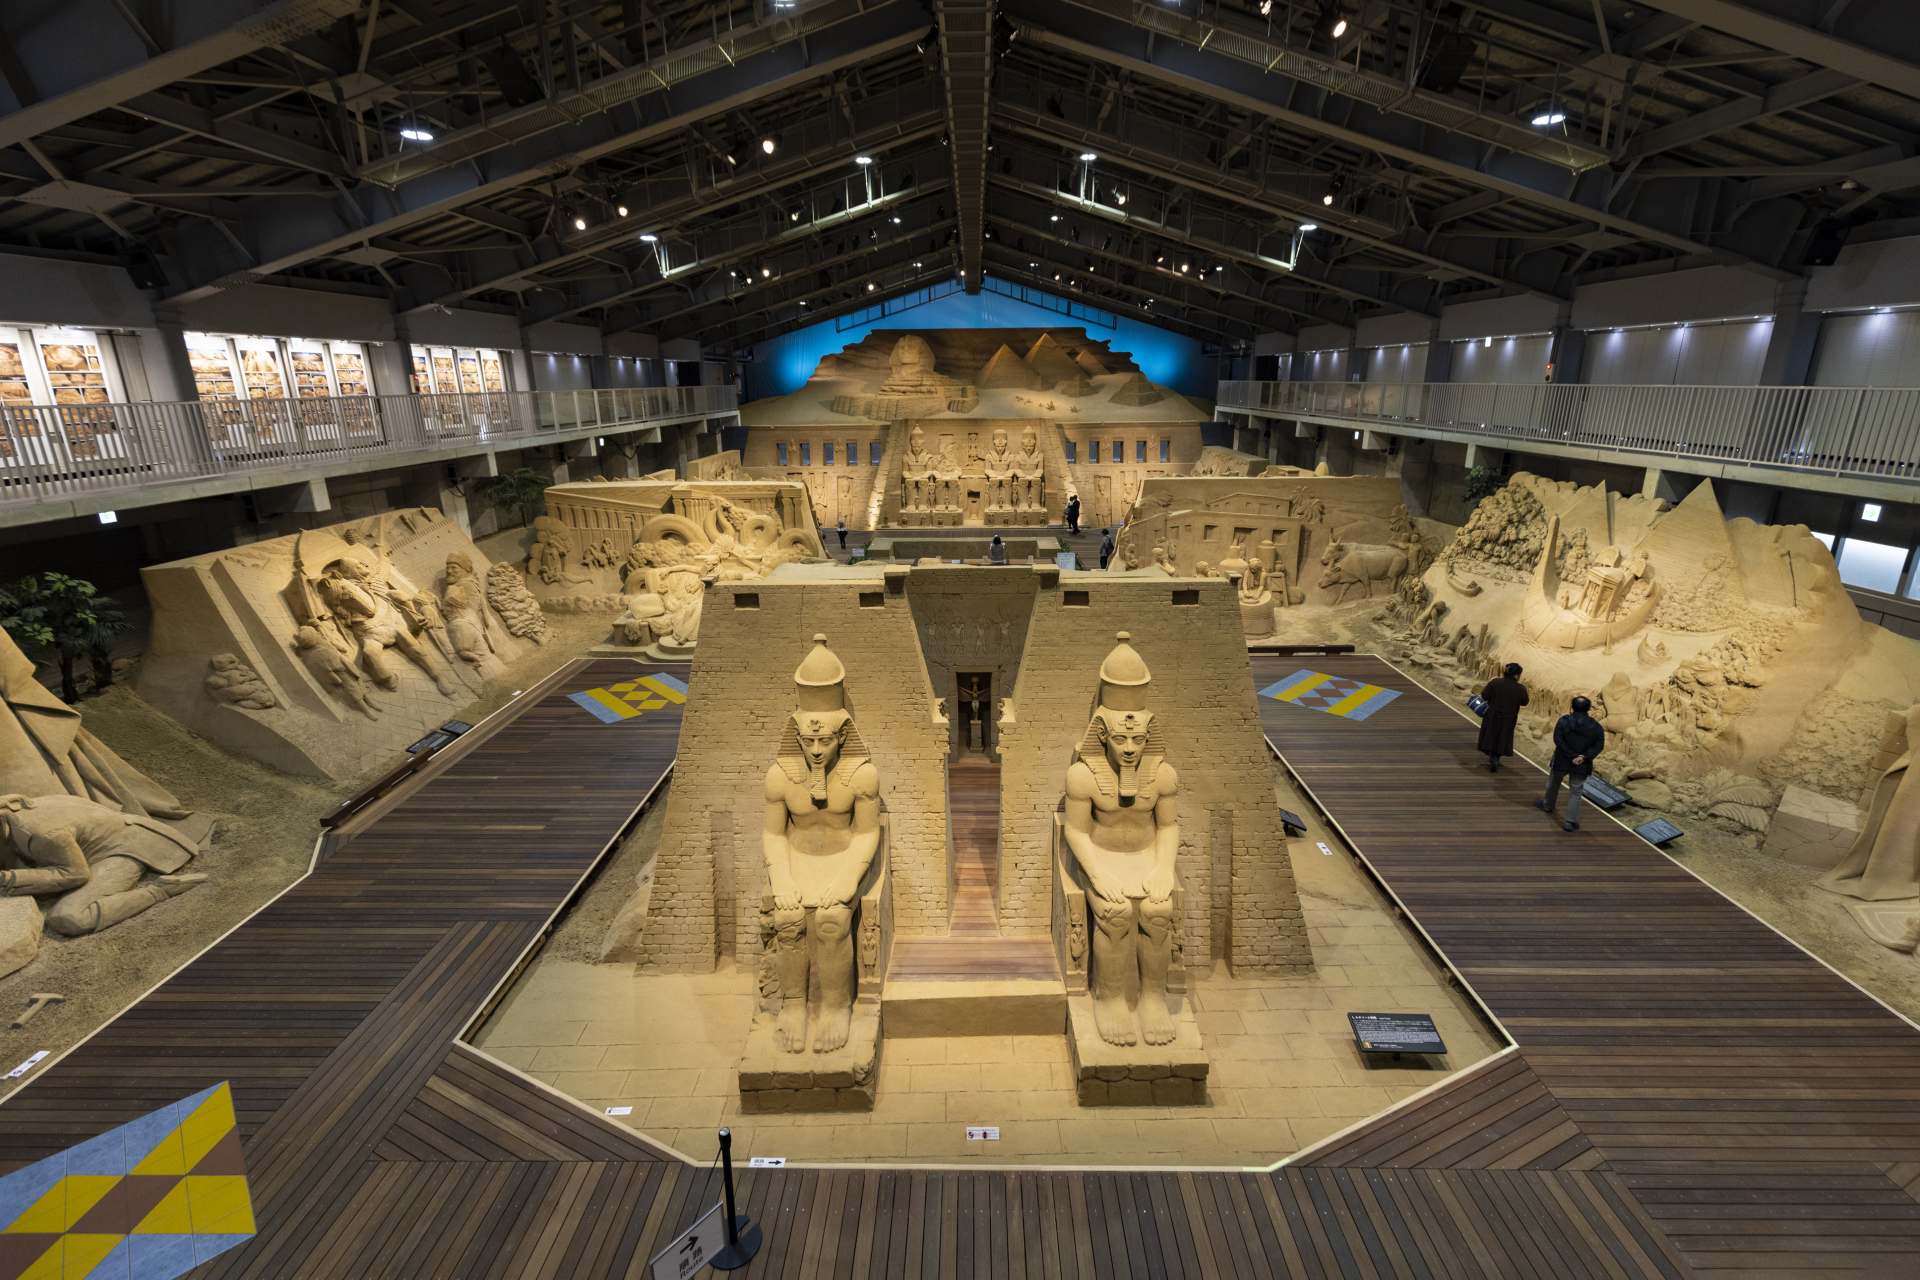 鳥取砂浜 砂の美術館は来館者を古代エジプトへとタイムスリップさせる。